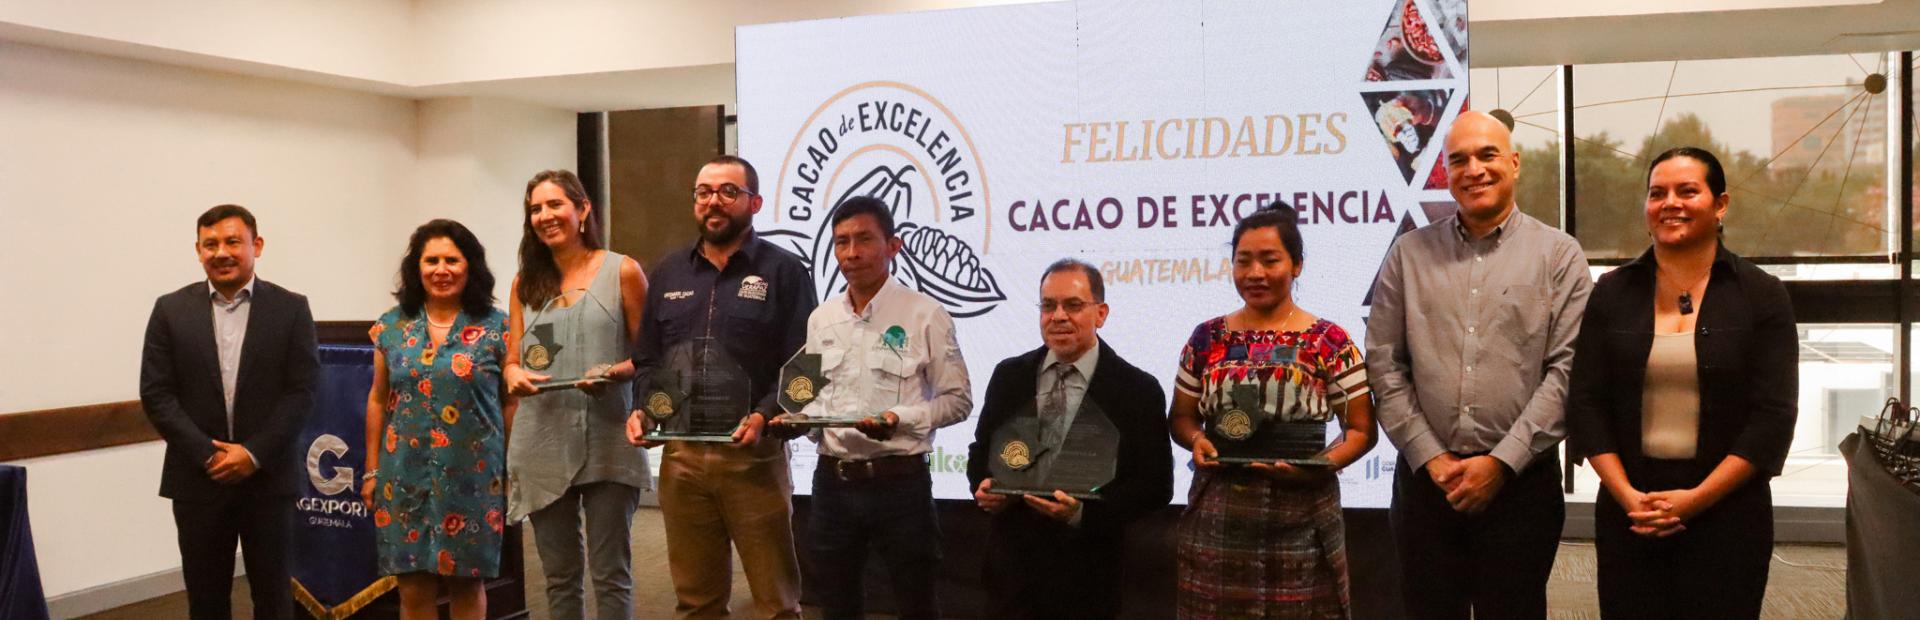 Premiación a los cinco mejores cacaos finos.